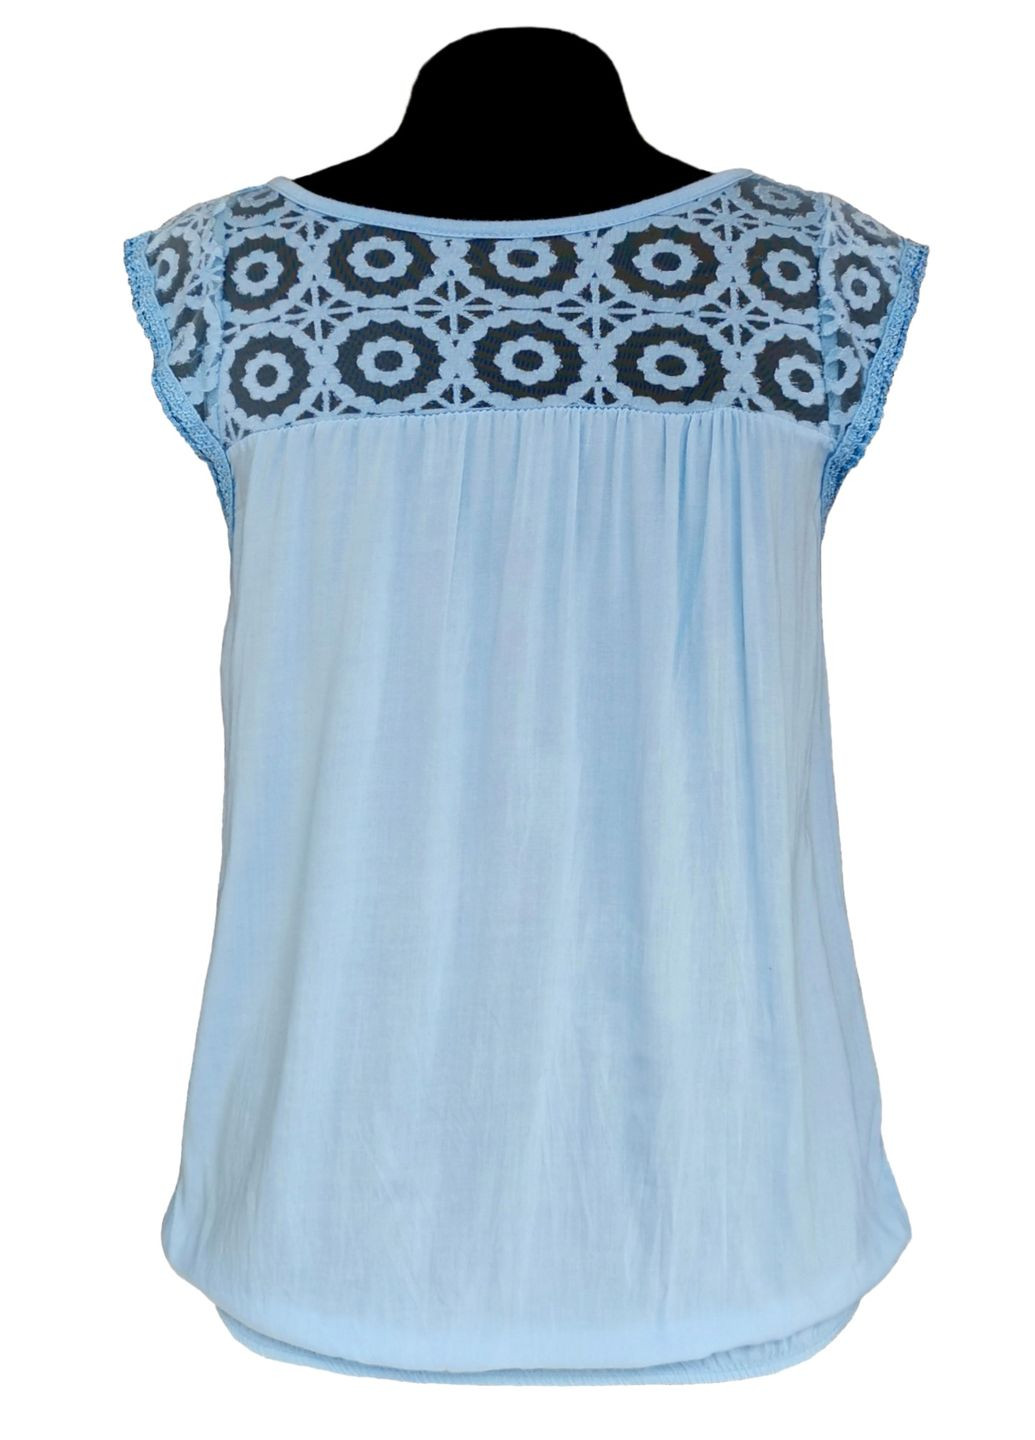 Голубая летняя блузка женская летняя вискозная с коротким рукавом и кружевом италия голубой free size No Brand